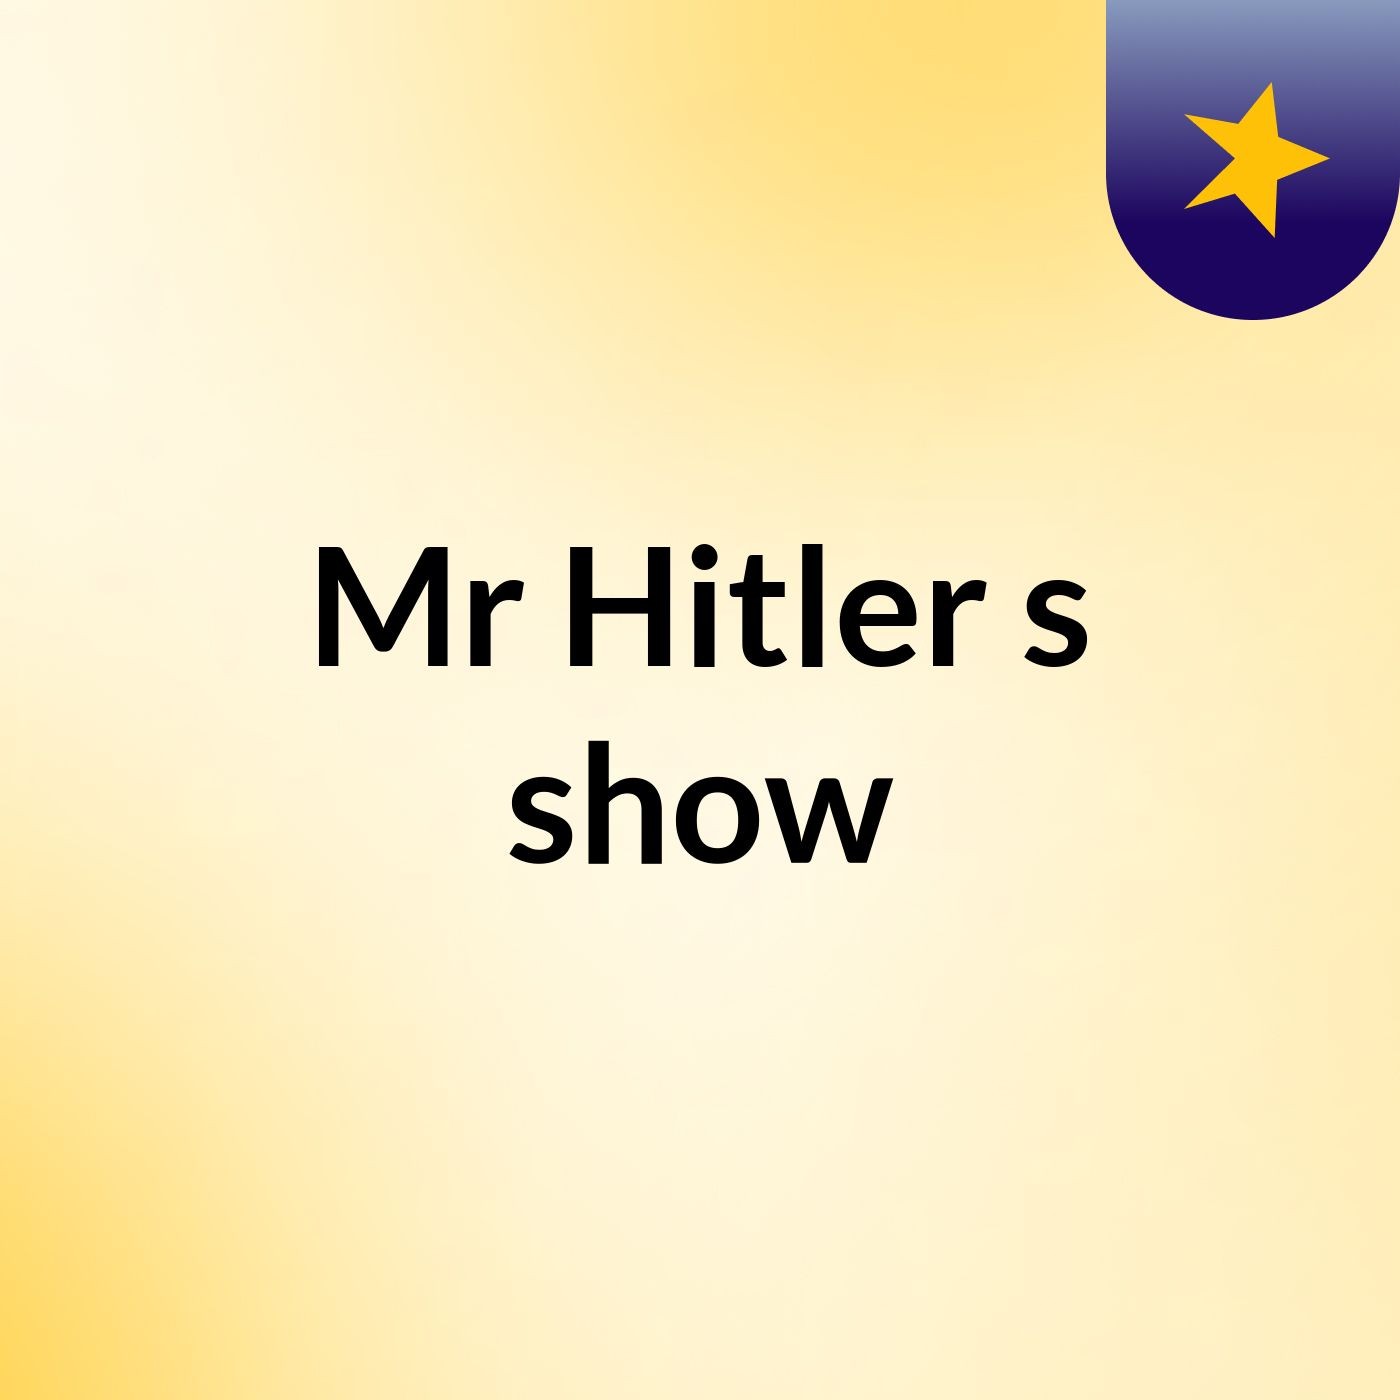 Mr Hitler's show